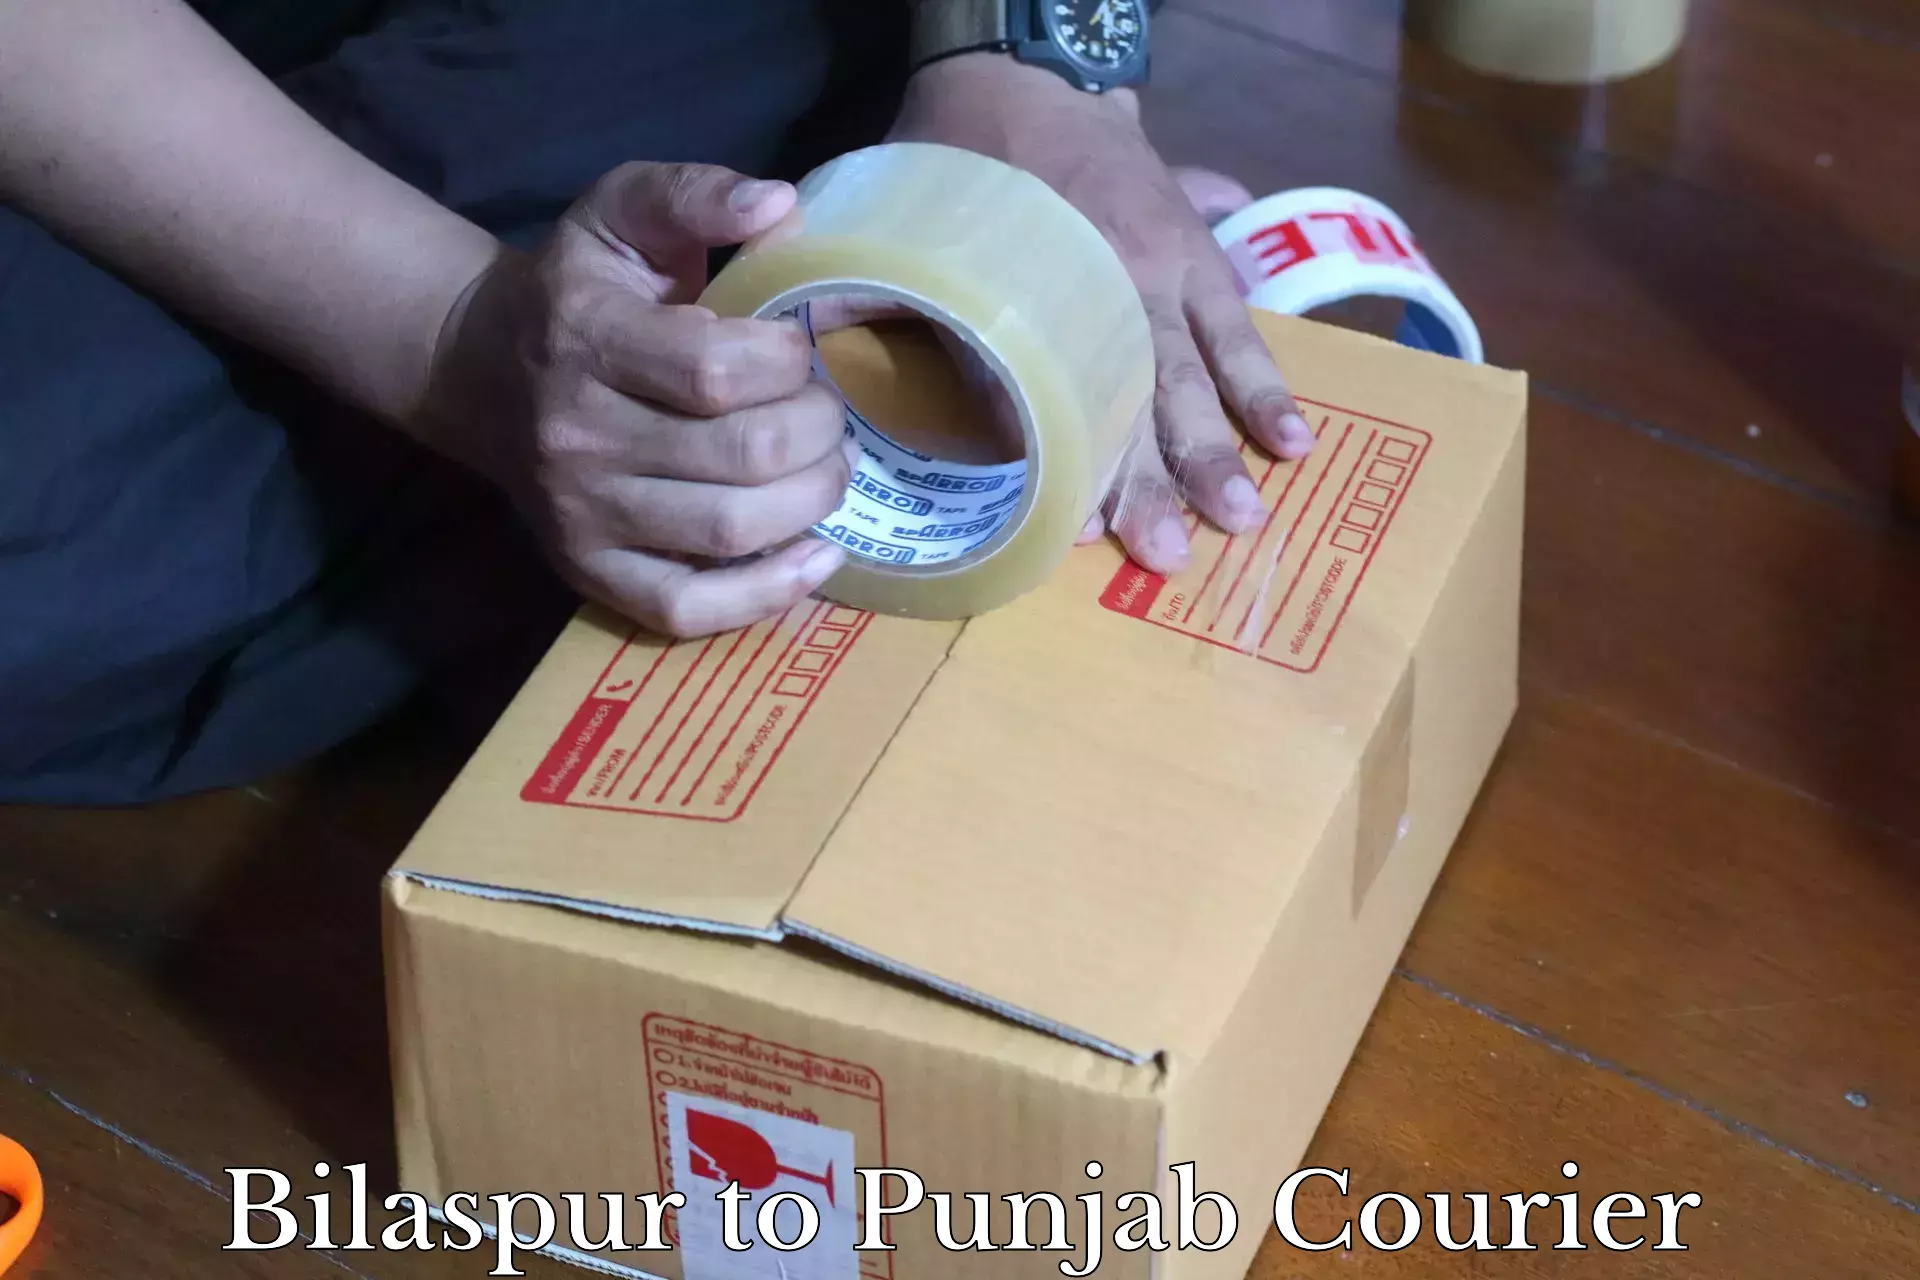 Courier service innovation Bilaspur to Rupnagar